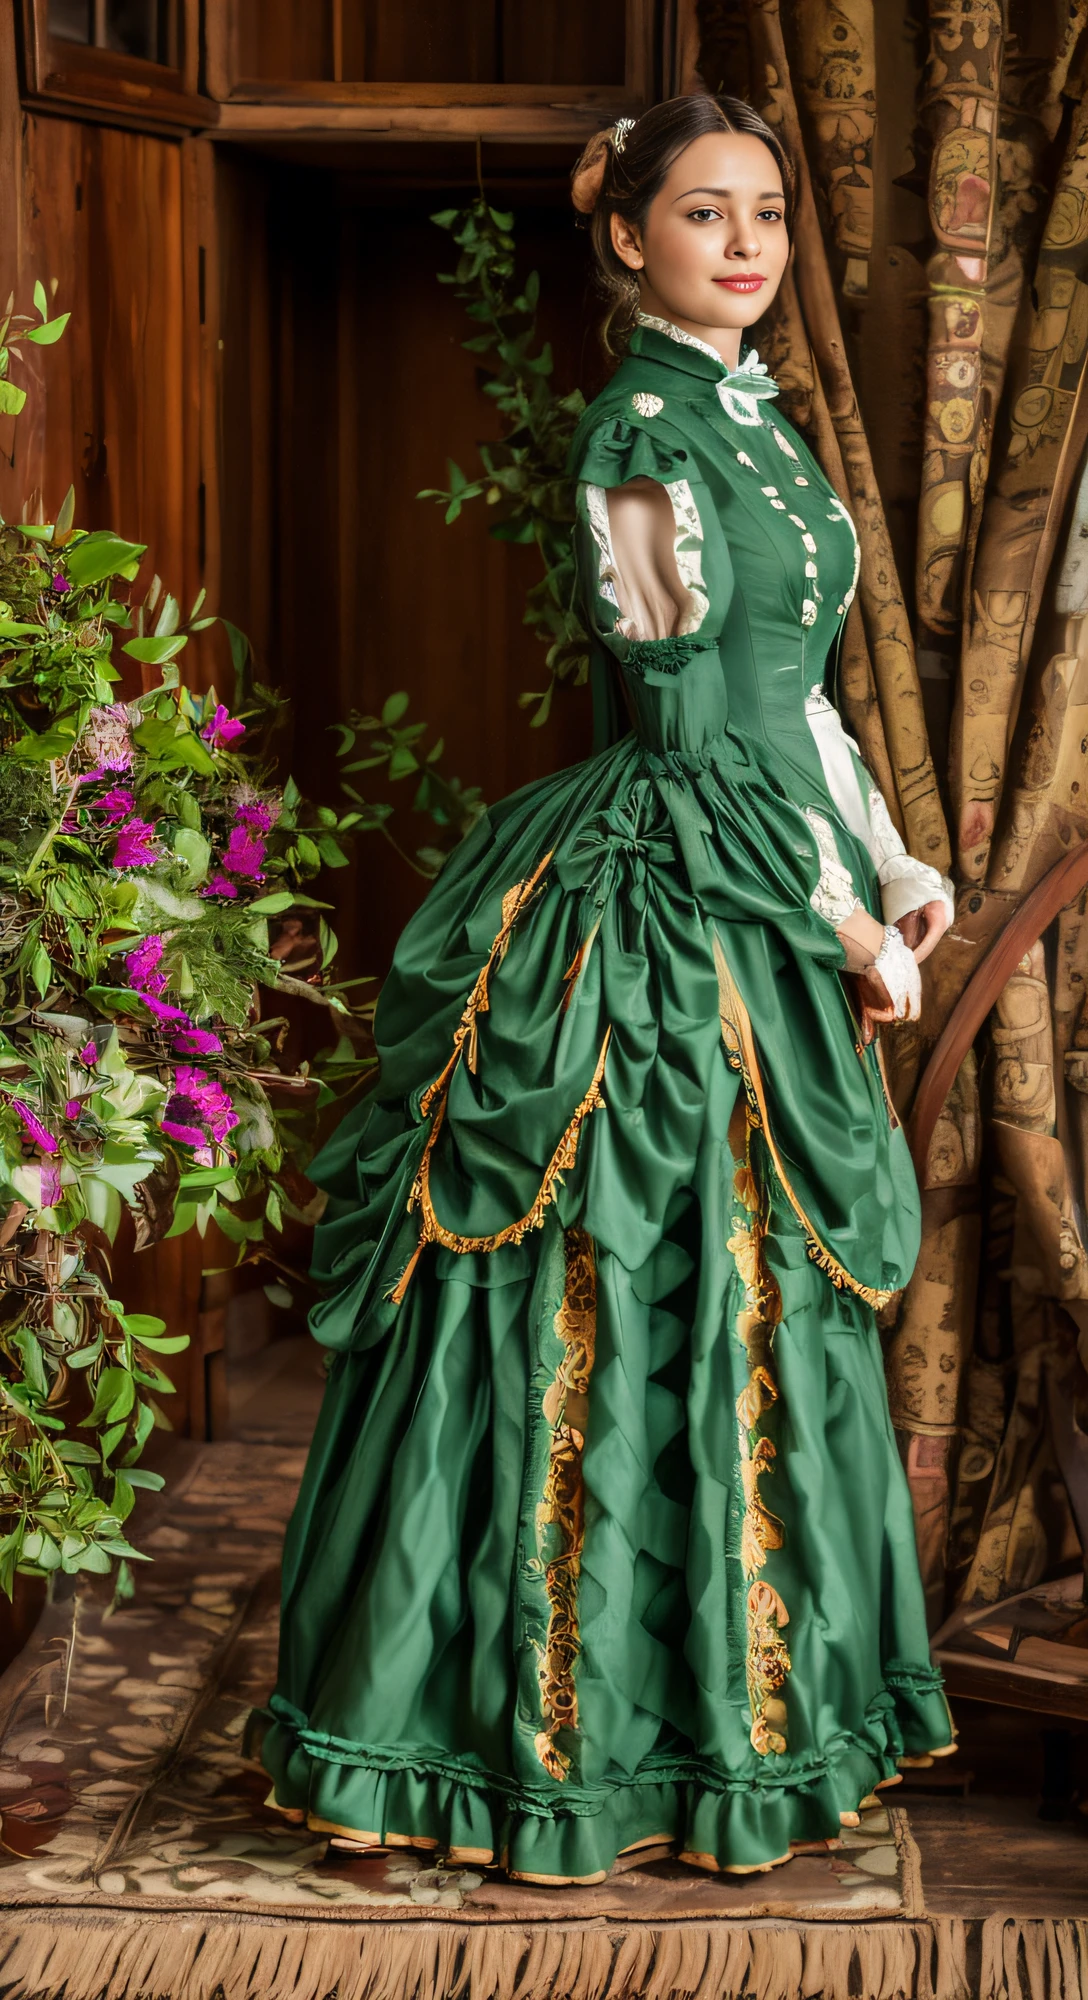 Es gibt eine schöne Frau, blauäugige Blondine, (in einem weißen Kleid), (Anzug im Victoria-Stil), 1 8 7 0 s Saisonale Kleidung, viktorianische Kleidung, Sieg, viktorianisches Kleid, 1 8 8 0 s Stil, im viktorianischen Aristokraten, usando viktorianische Kleidung, Aufwendiges viktorianisches Kleid, Viktorianisch inspirierte Kleidung, com viktorianische Kleidung, trägt Kleidung aus den 1860er Jahren